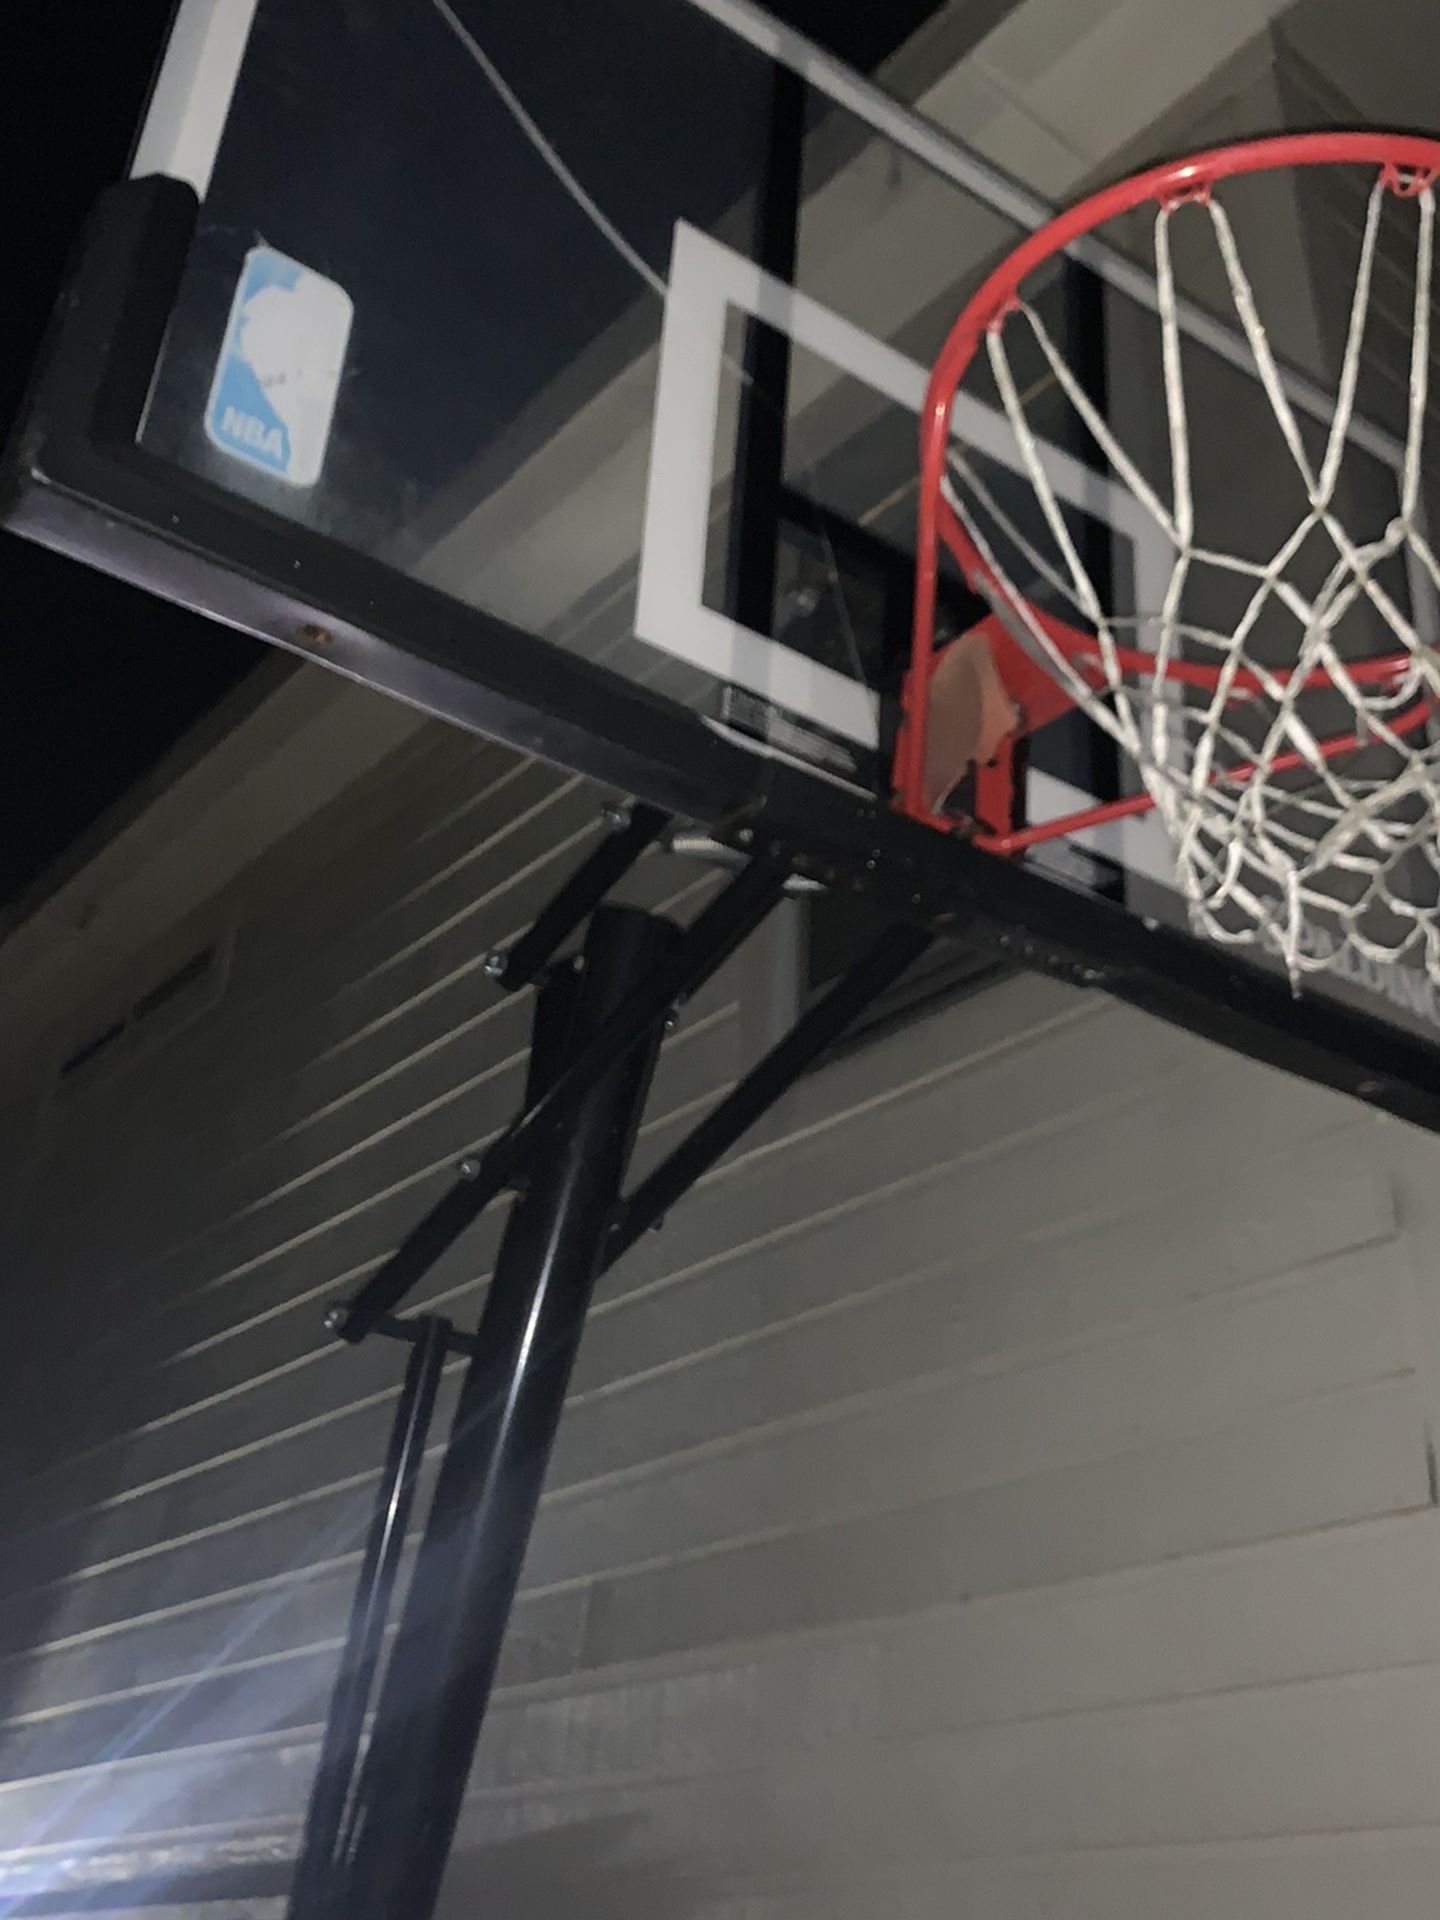 Spaulding Basketball Hoop